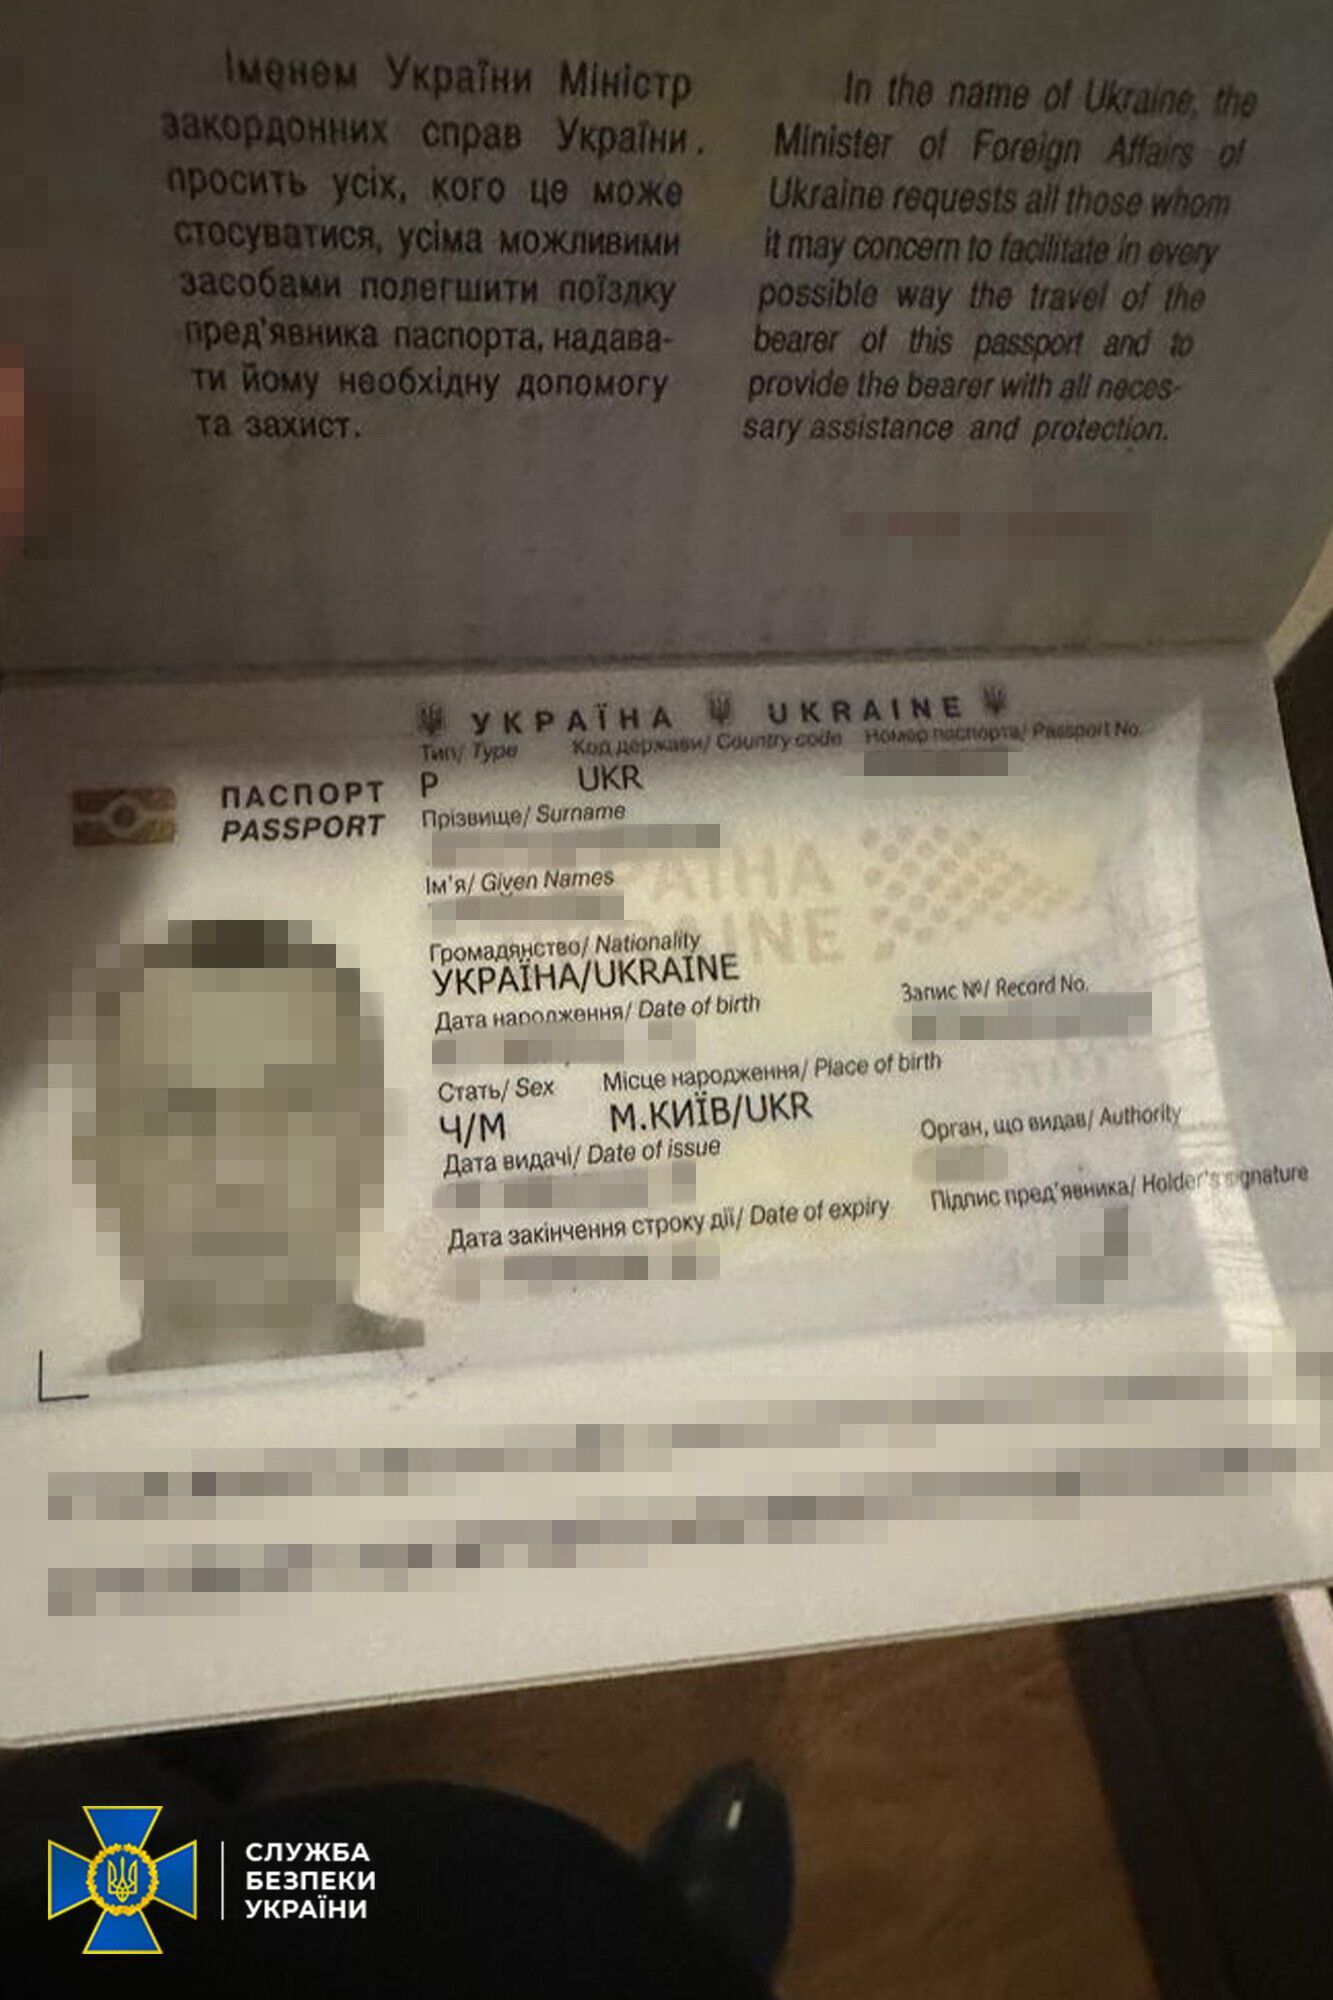 В паспорті візи з Мальдівів: у депутата-слуги Арістова, що відпочивав на островах, провели обшуки (фото та відео)